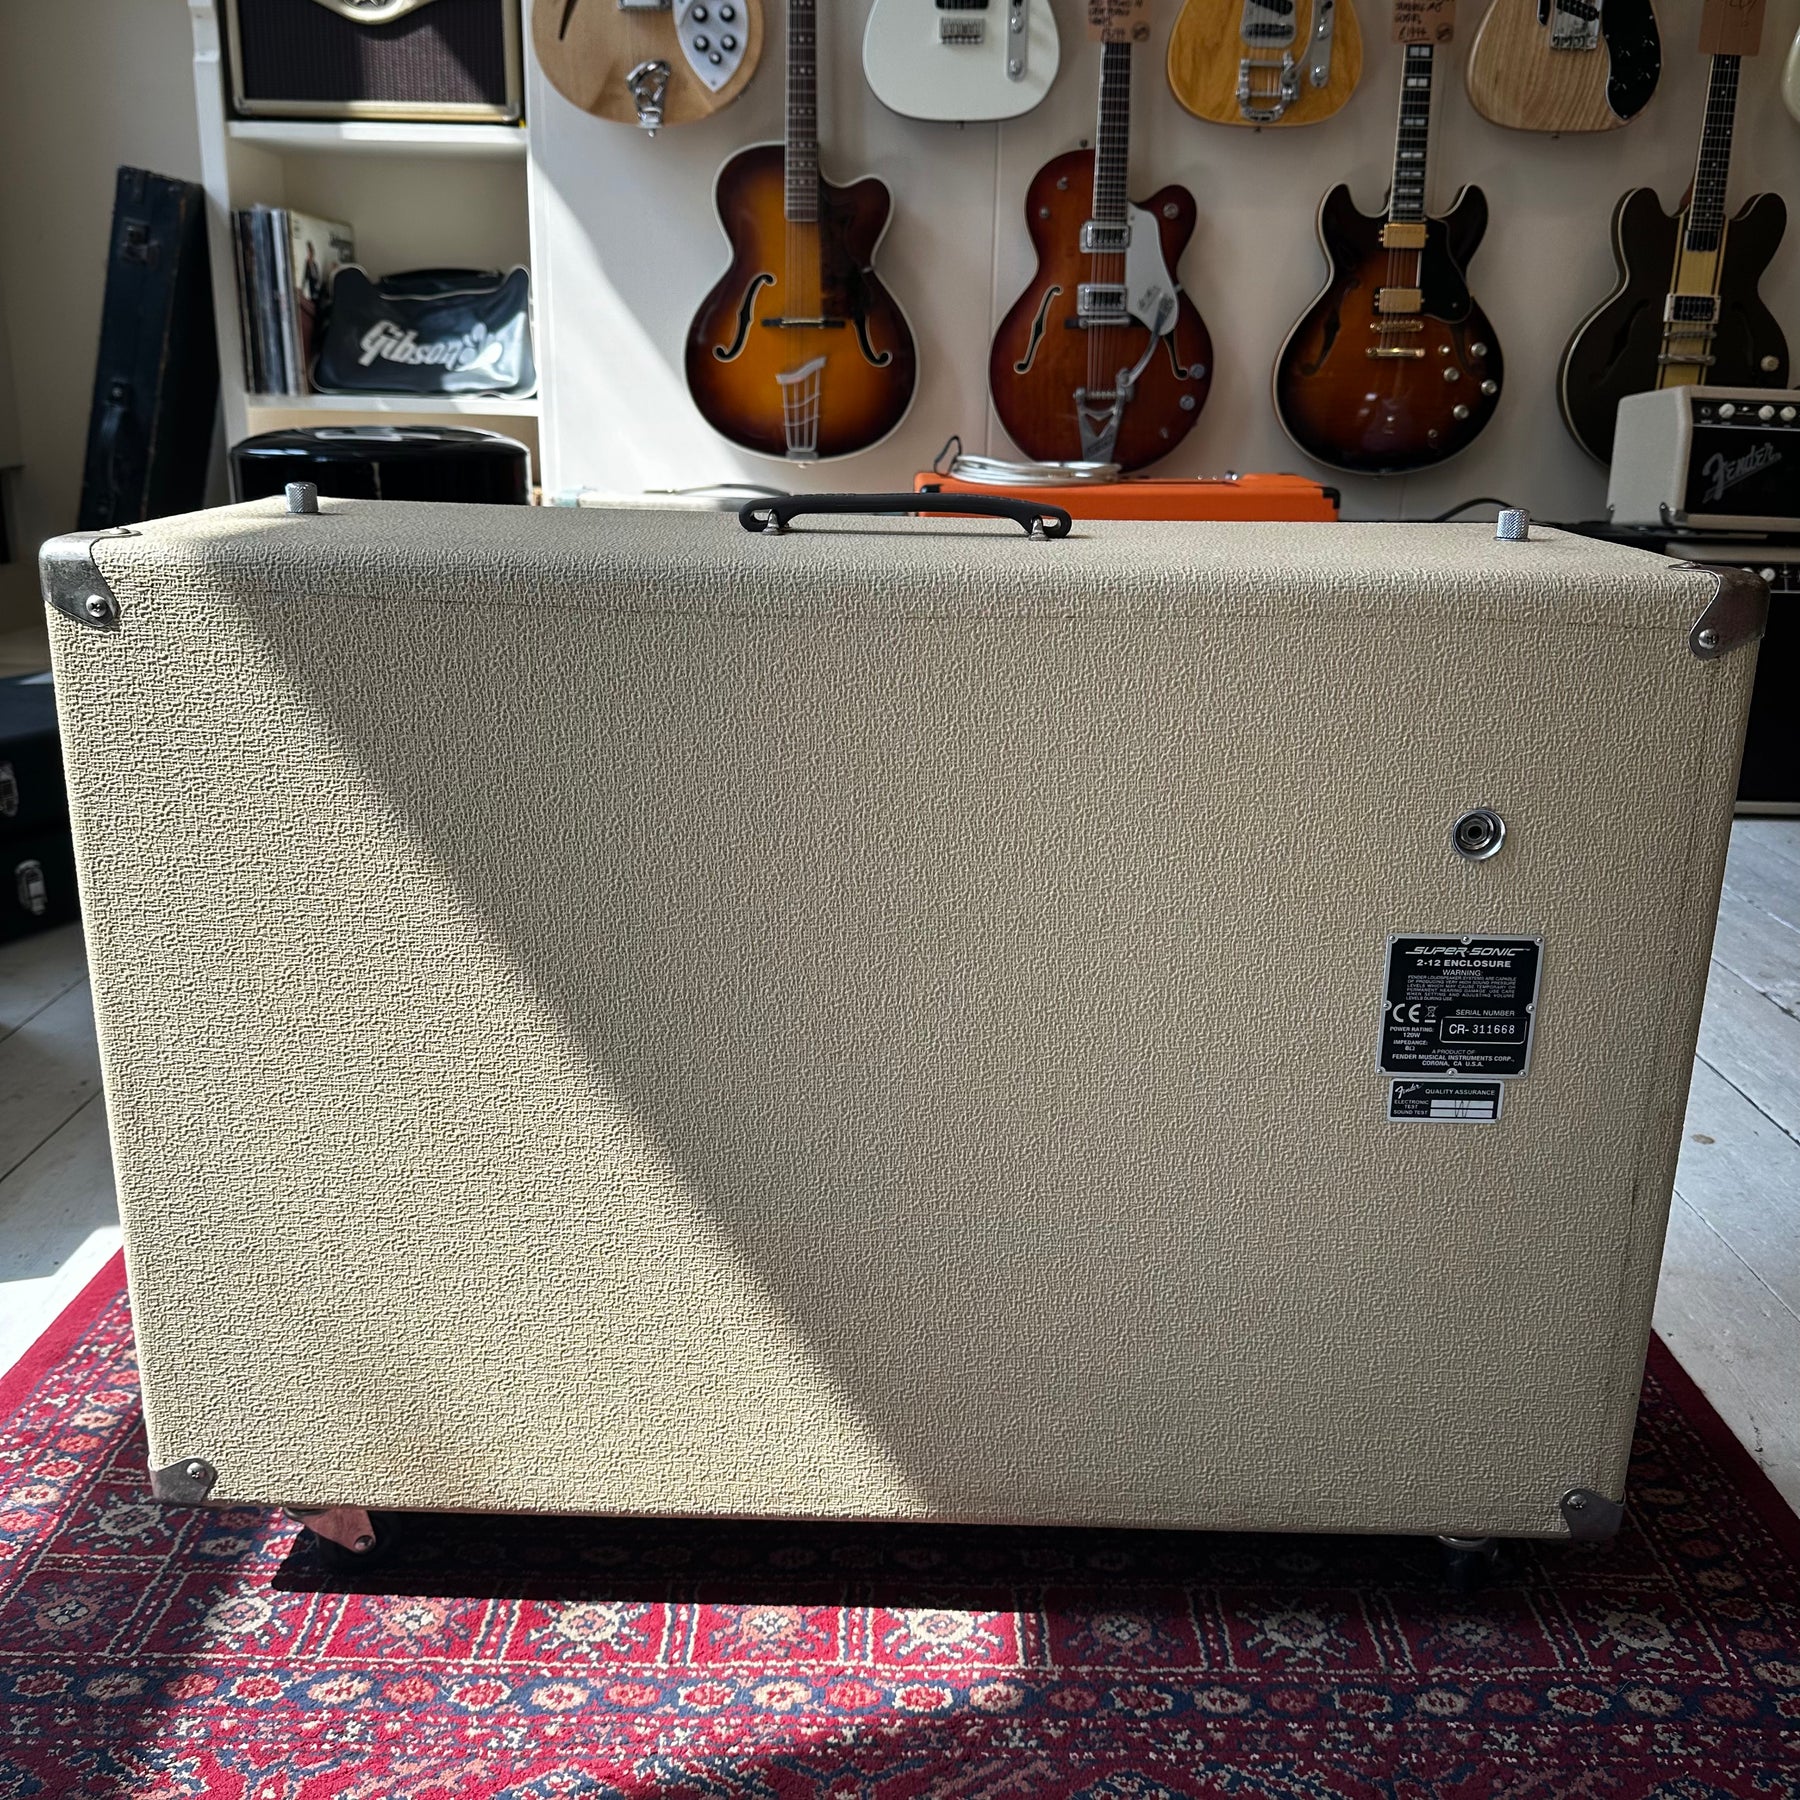 Fender Super Sonic 60 Blonde 2x12" Speaker Cabinet - Preowned